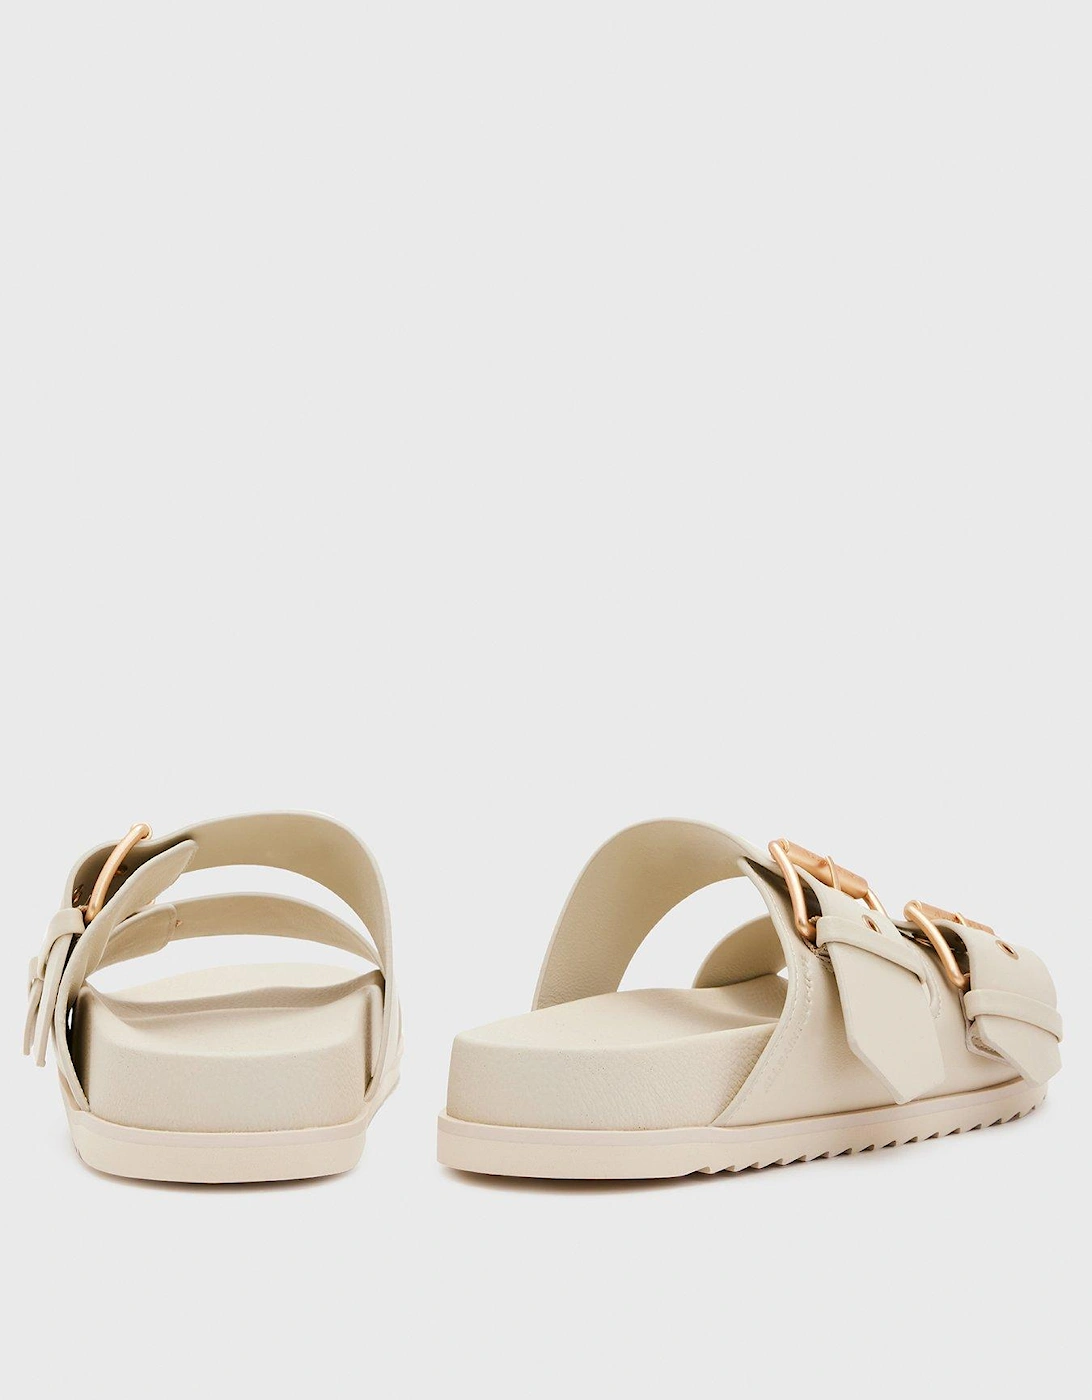 Sian Sandals - White